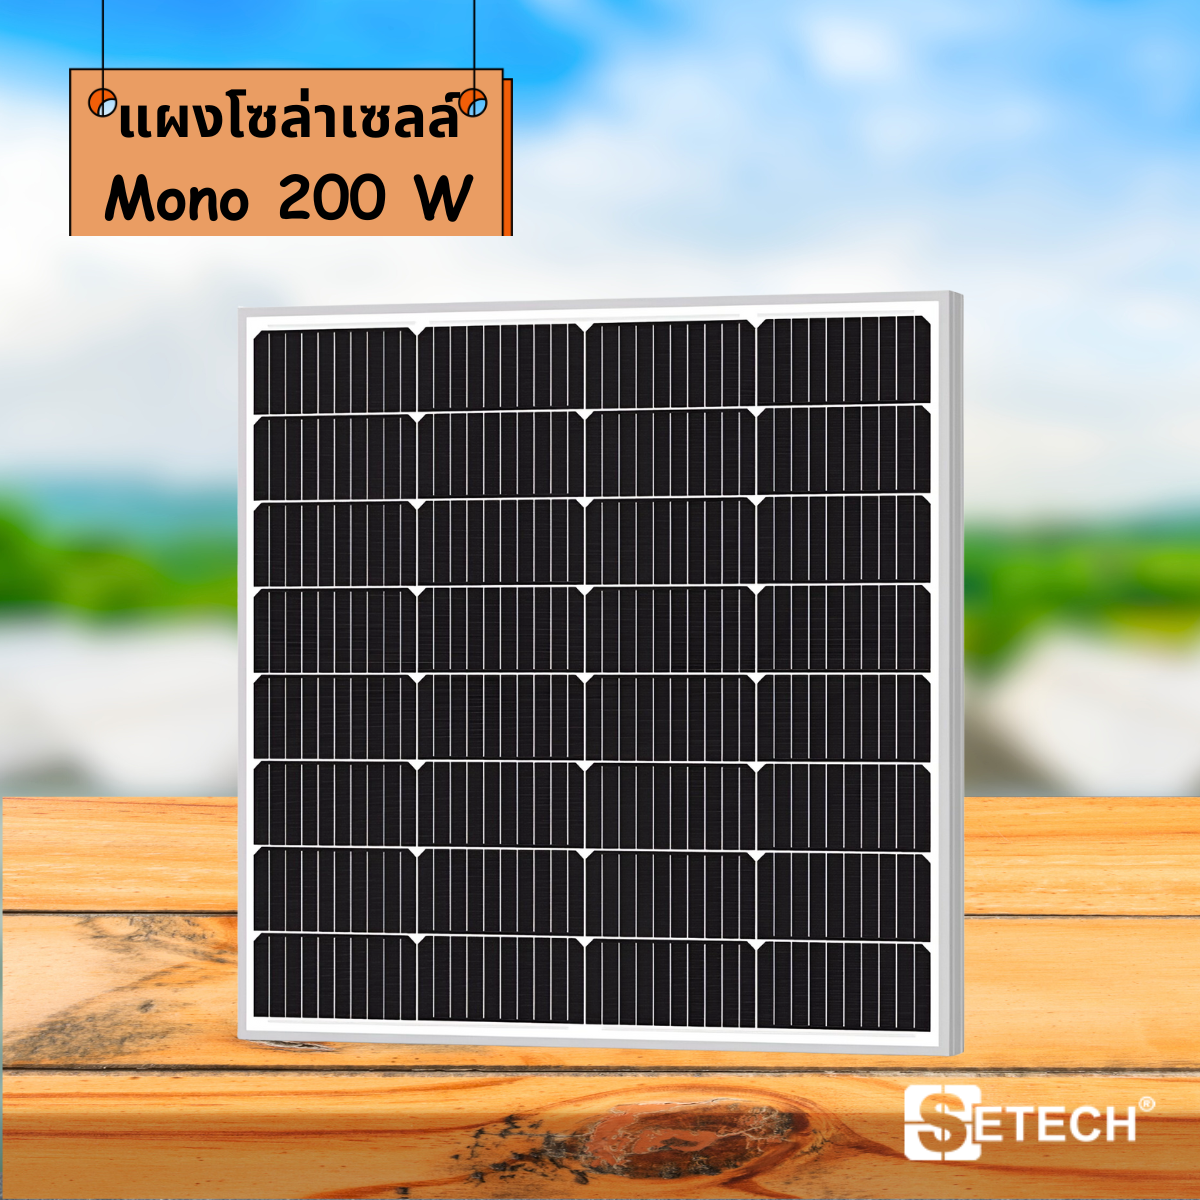 Solar panels Model Mono 200 W SETECH-SC-01